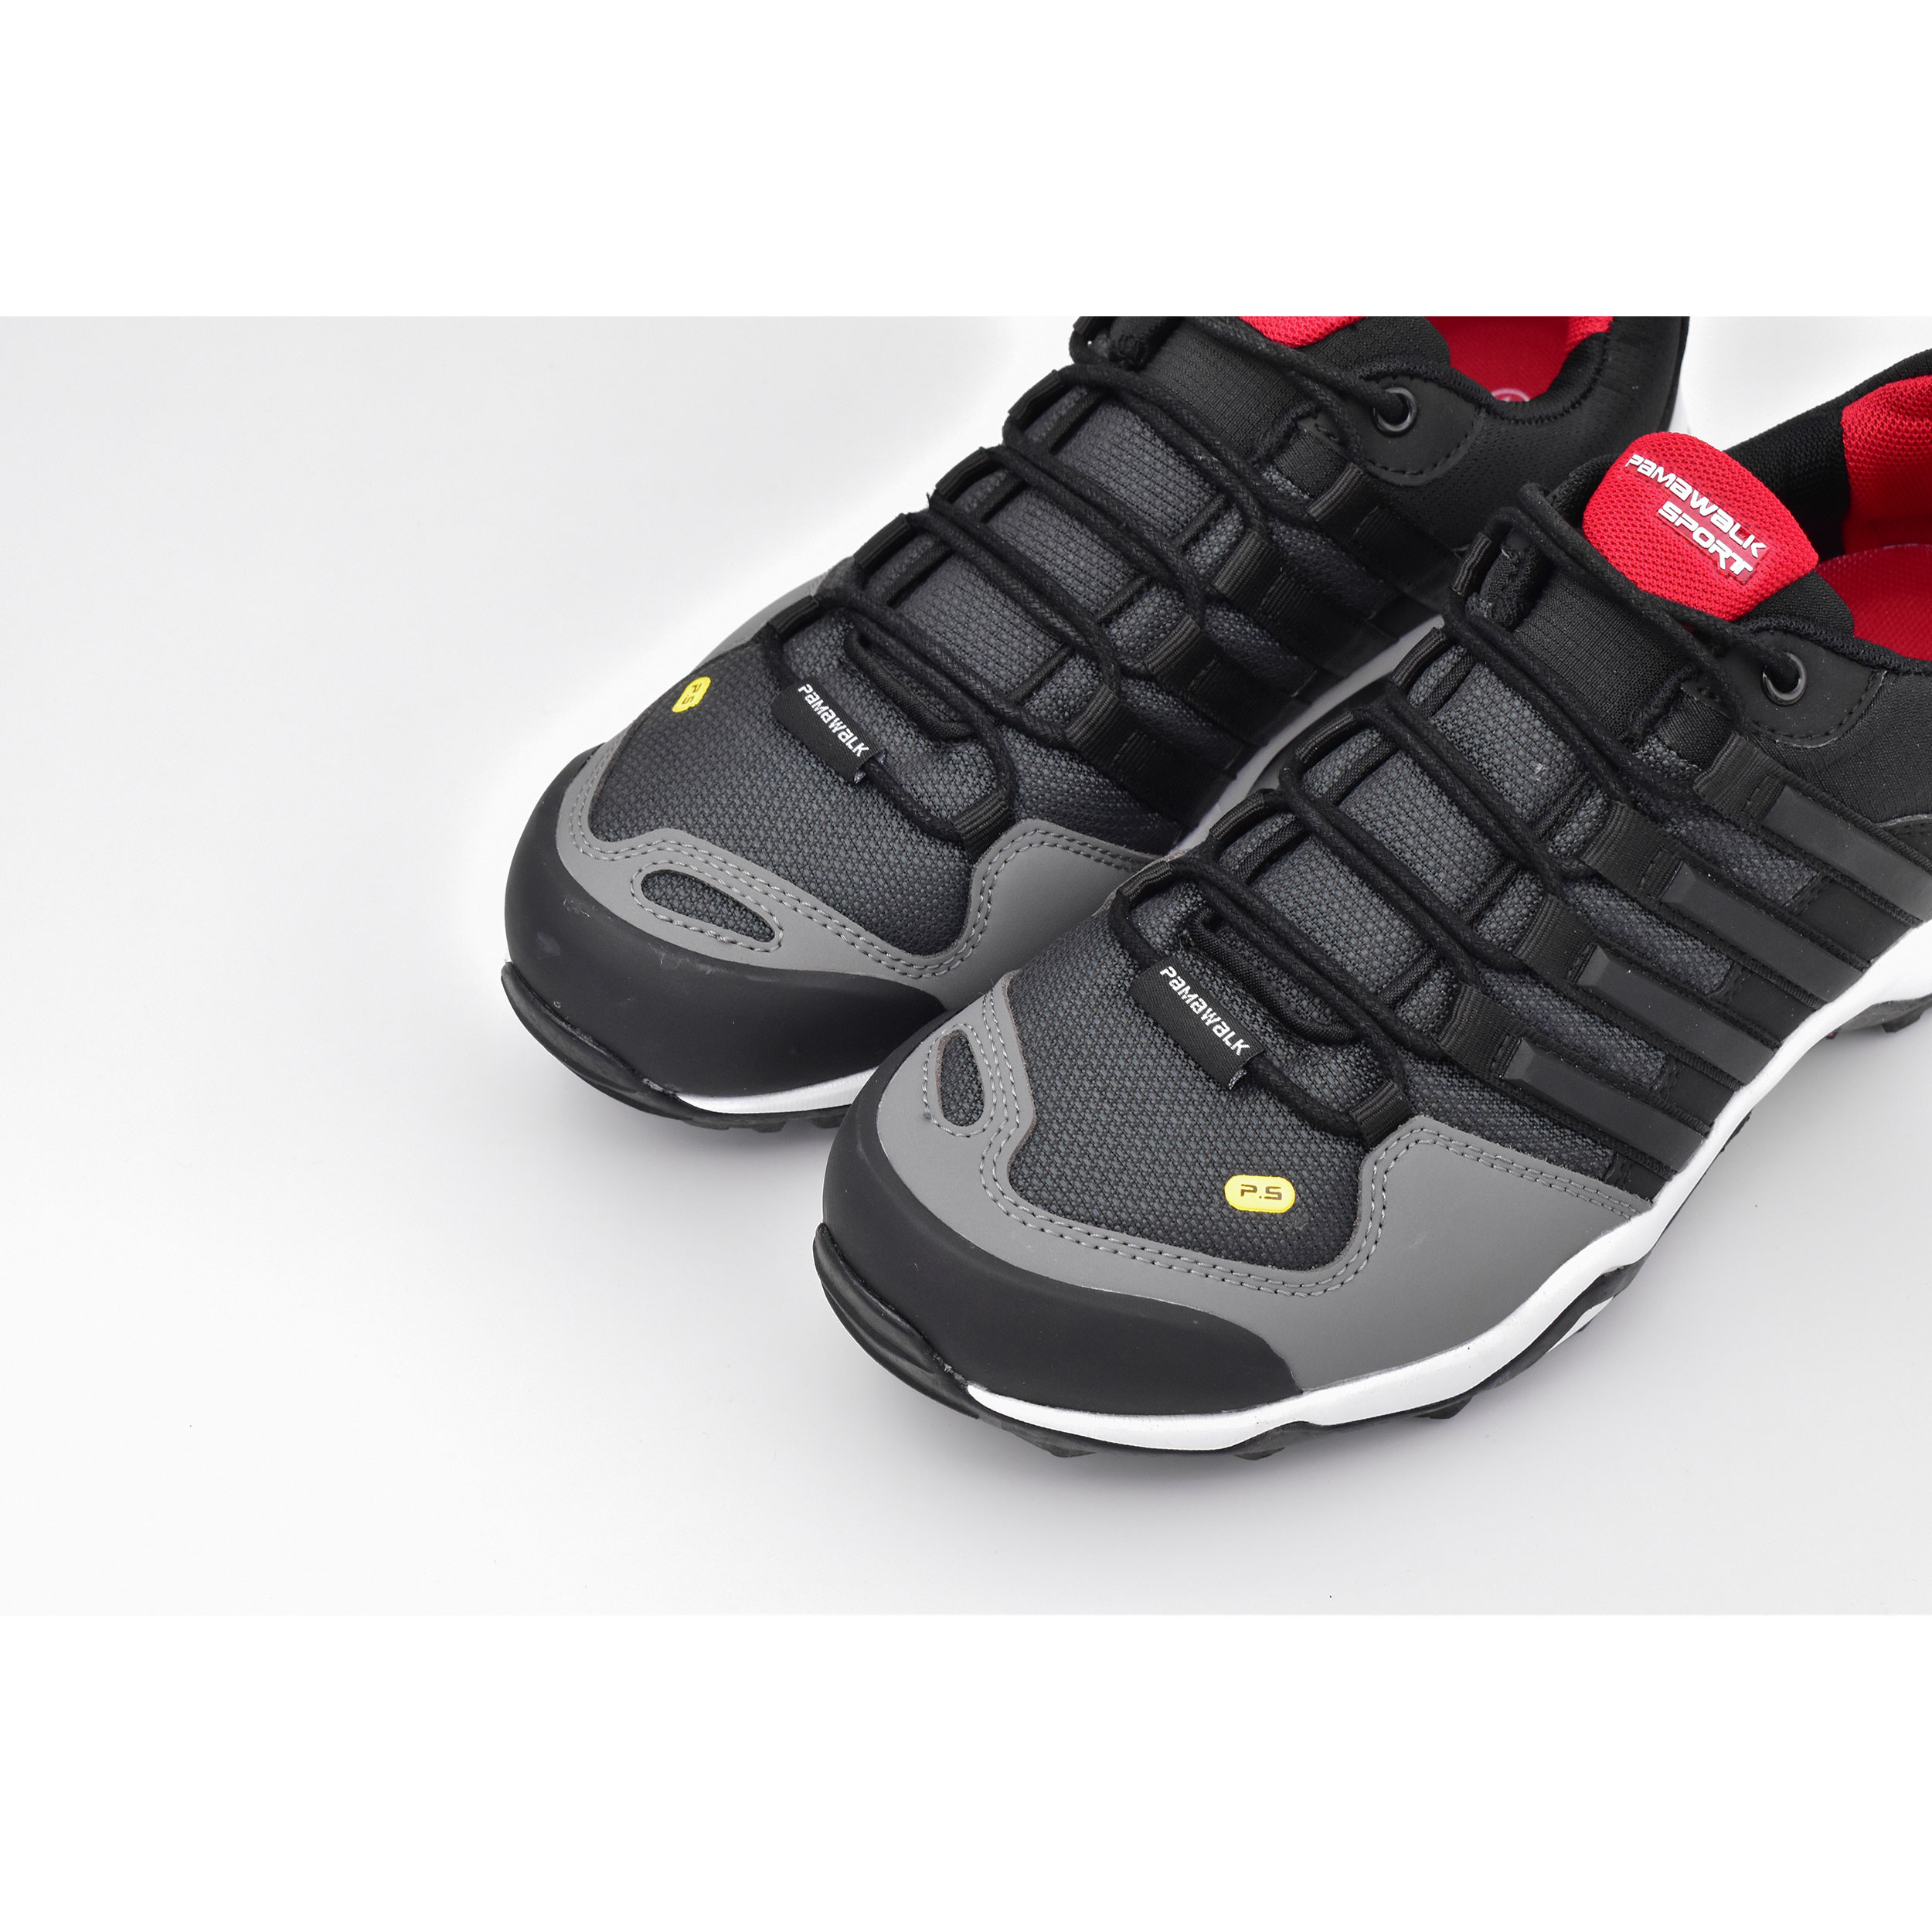 ✓ قیمت و مشخصات کفش پیاده روی مردانه پاما مدل TT کد 1080-2 - زیراکو ✓